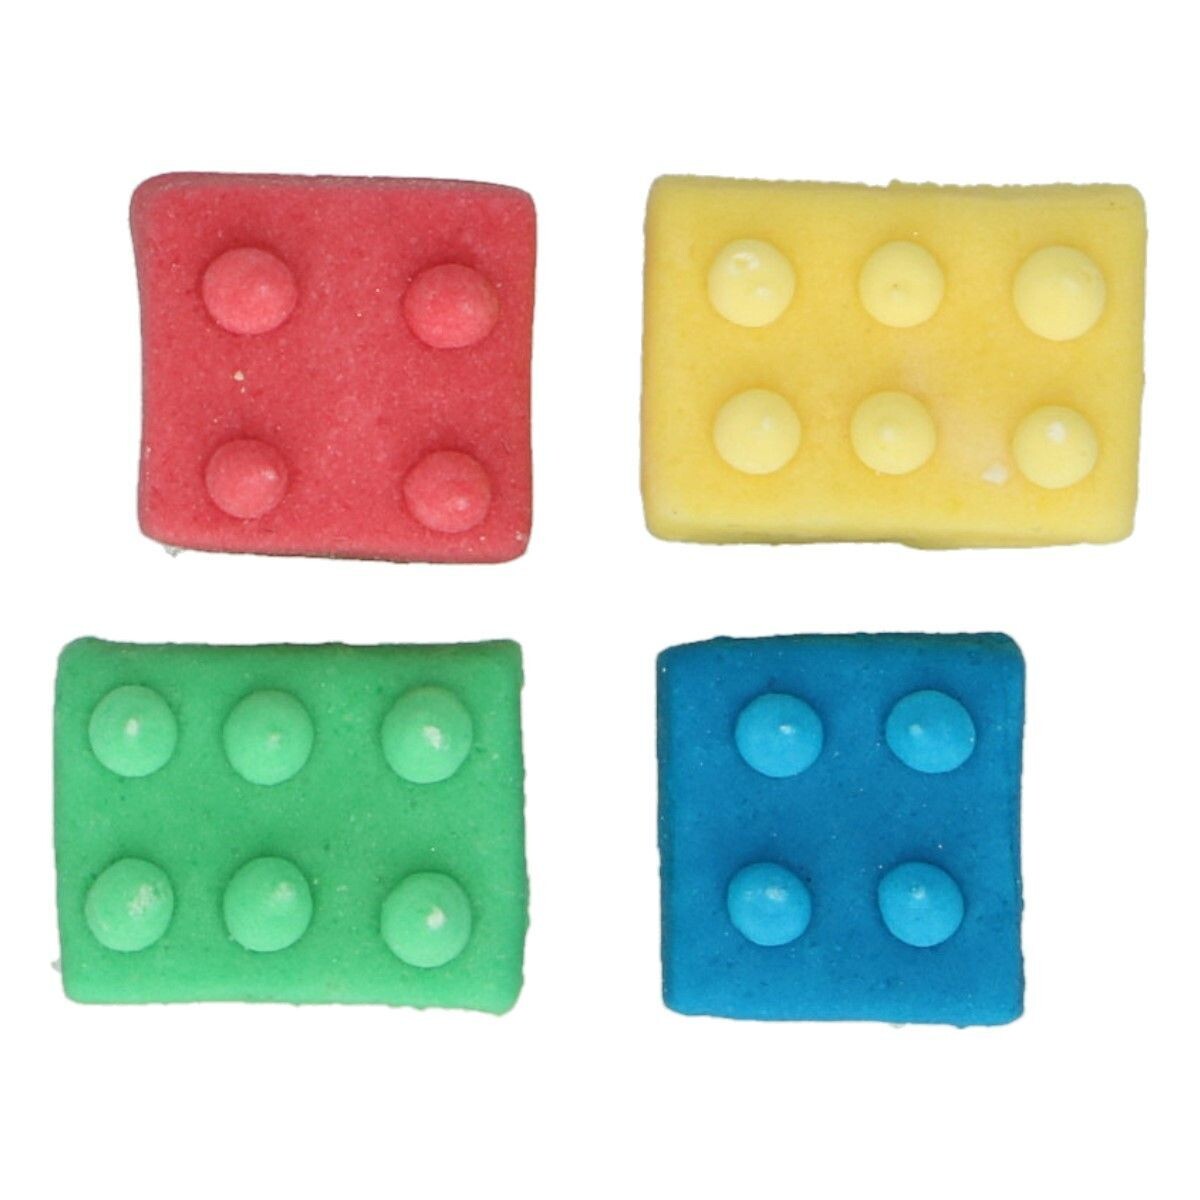 FunCakes Sugar Decorations -BUILDING BLOCKS 8τμχ - Βρώσιμα Διακοσμητικά Ζαχαρωτά Τουβλάκια Lego